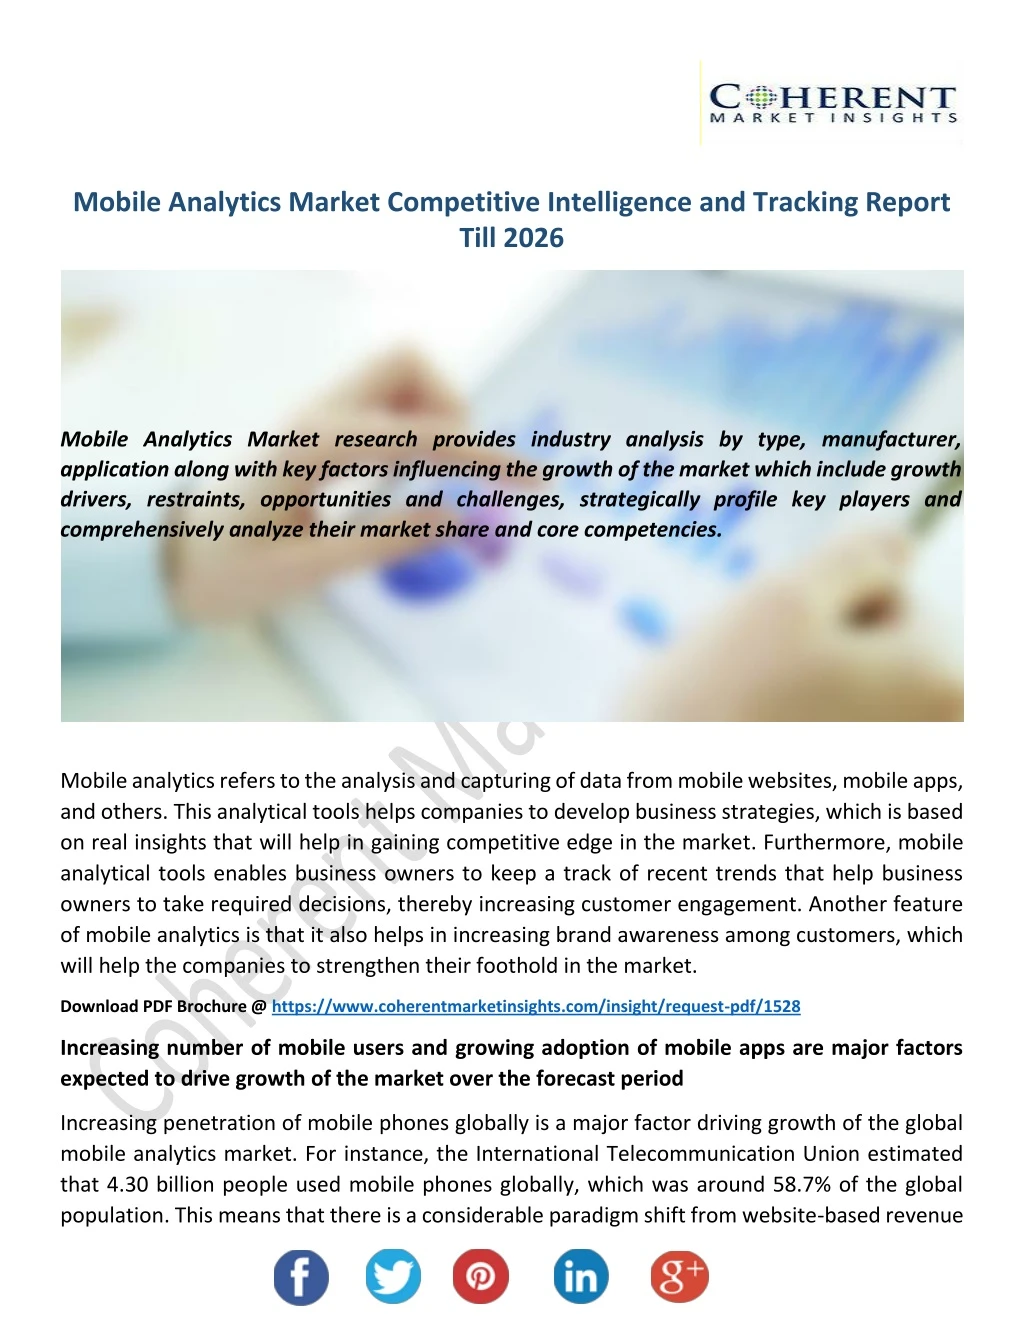 mobile analytics market competitive intelligence